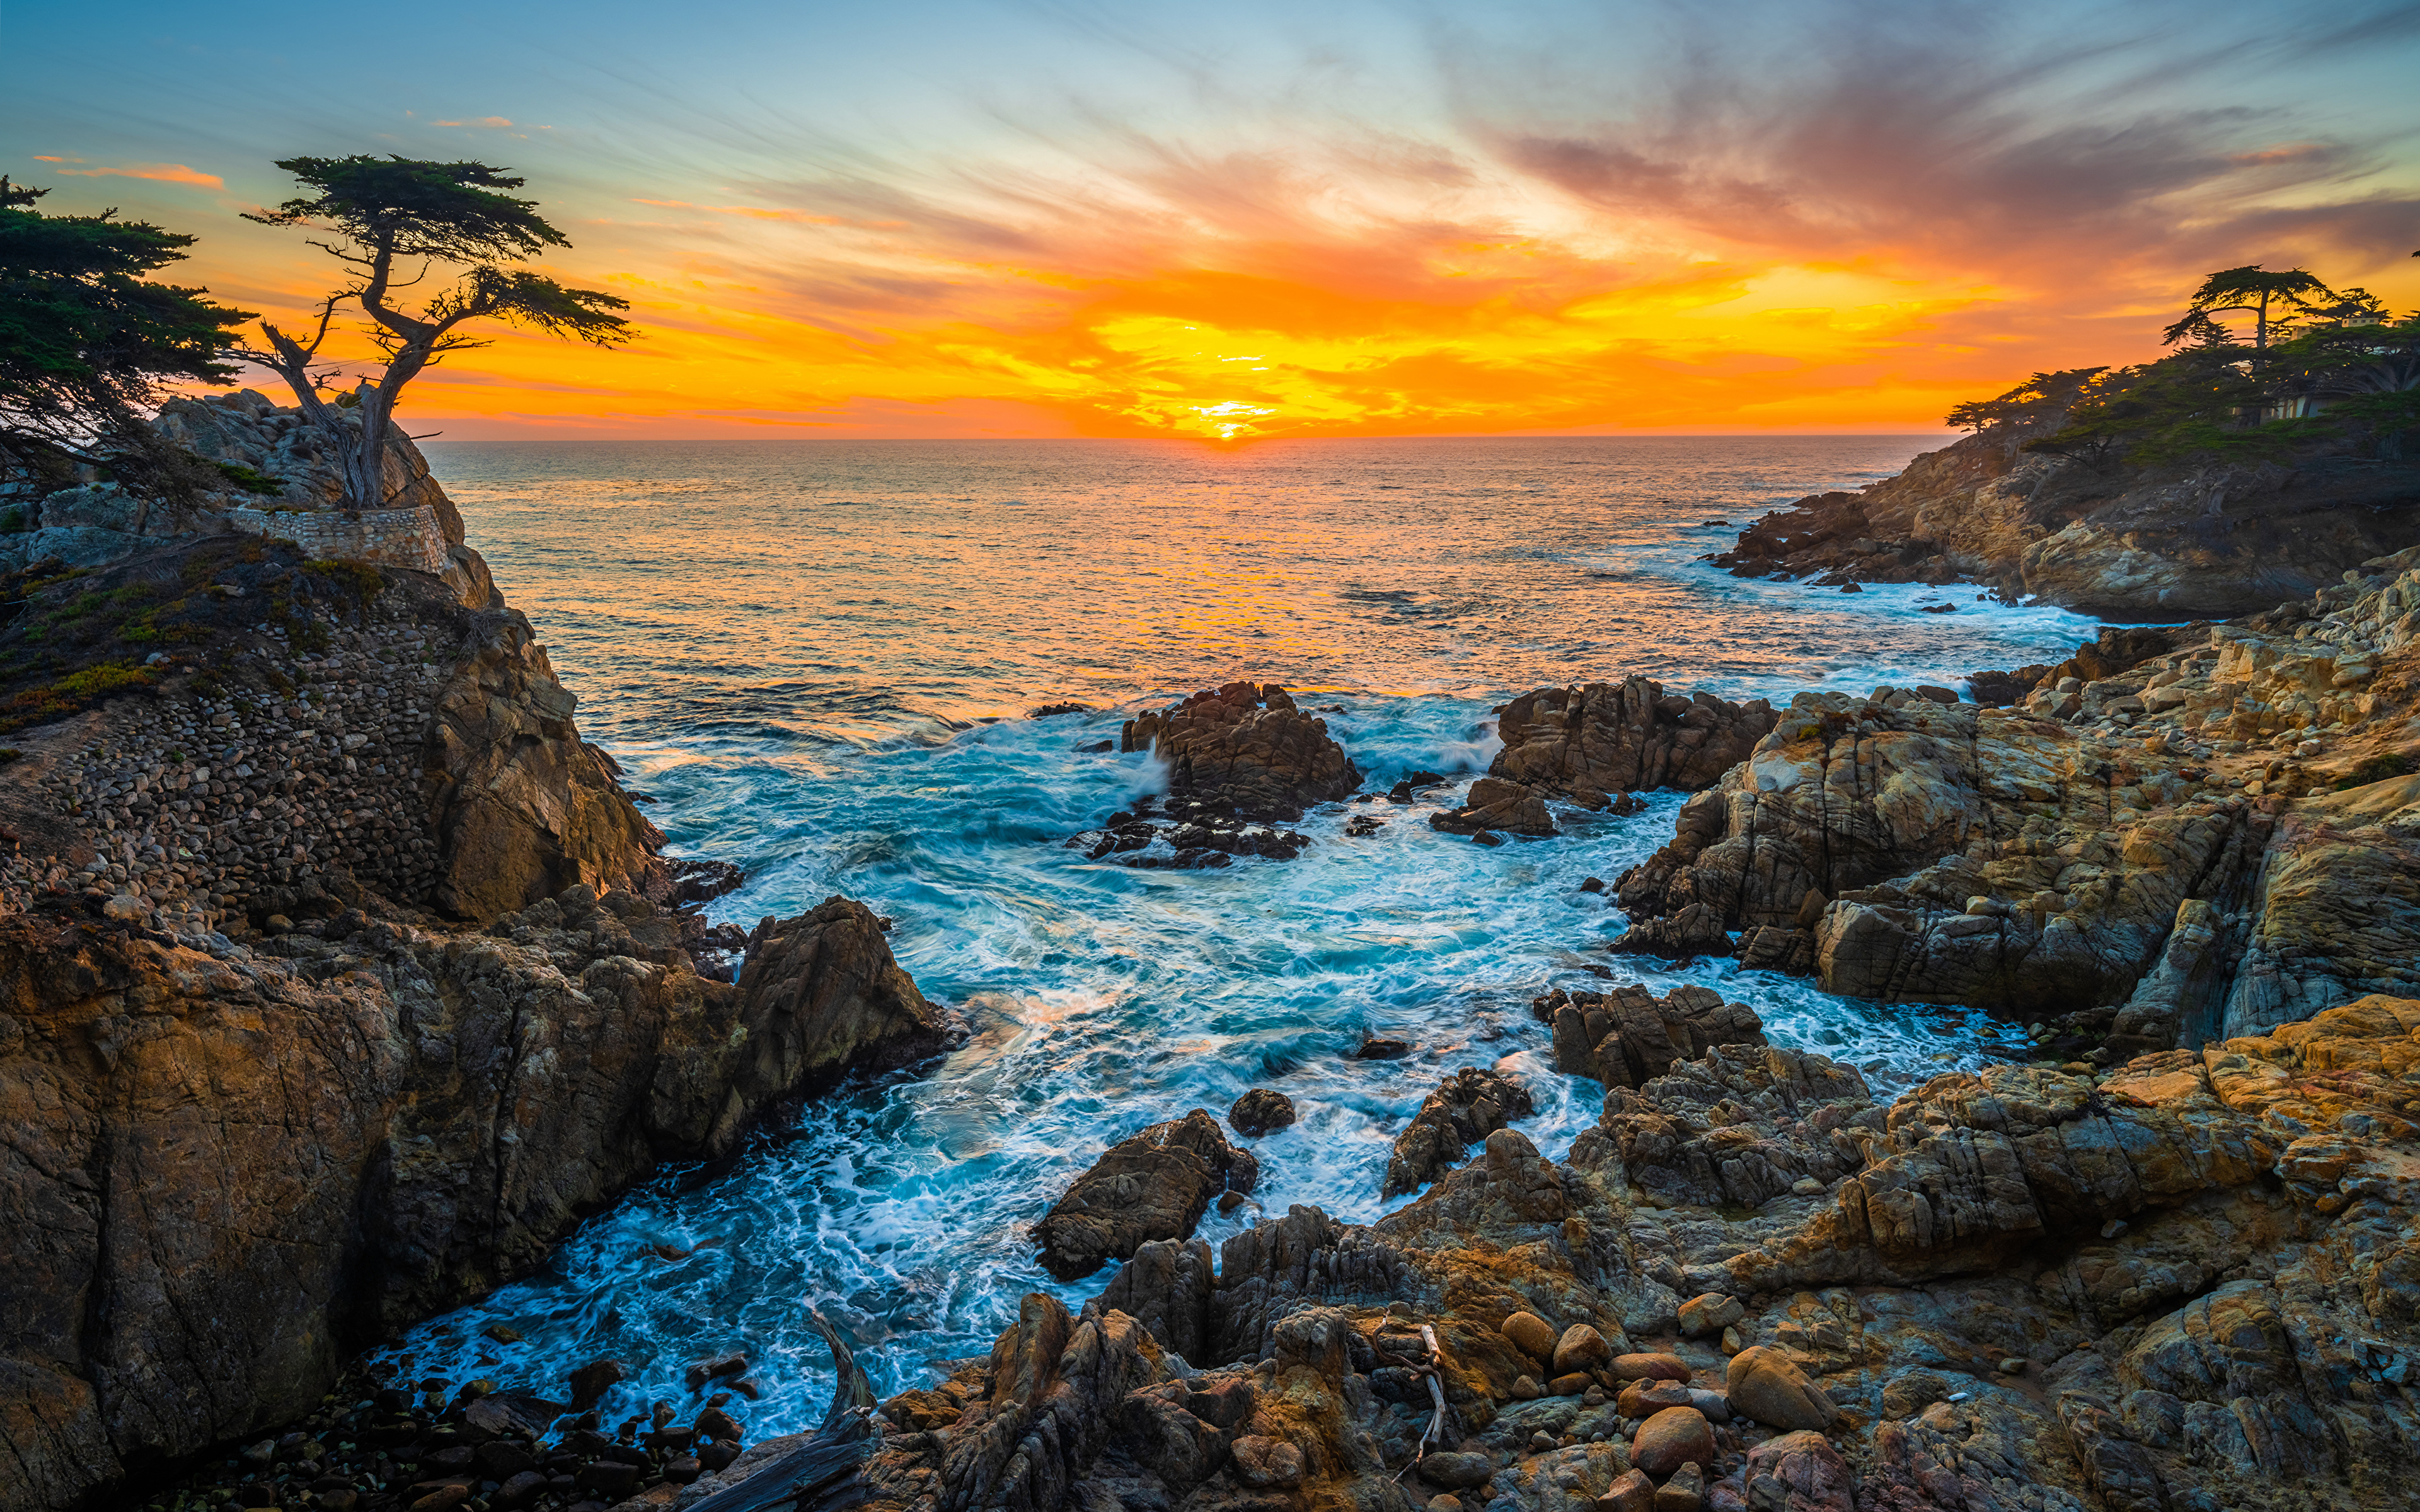 壁紙 3840x2400 アメリカ合衆国 海岸 大洋 石 朝焼けと日没 Pebble Beach 岩 カリフォルニア州 自然 ダウンロード 写真